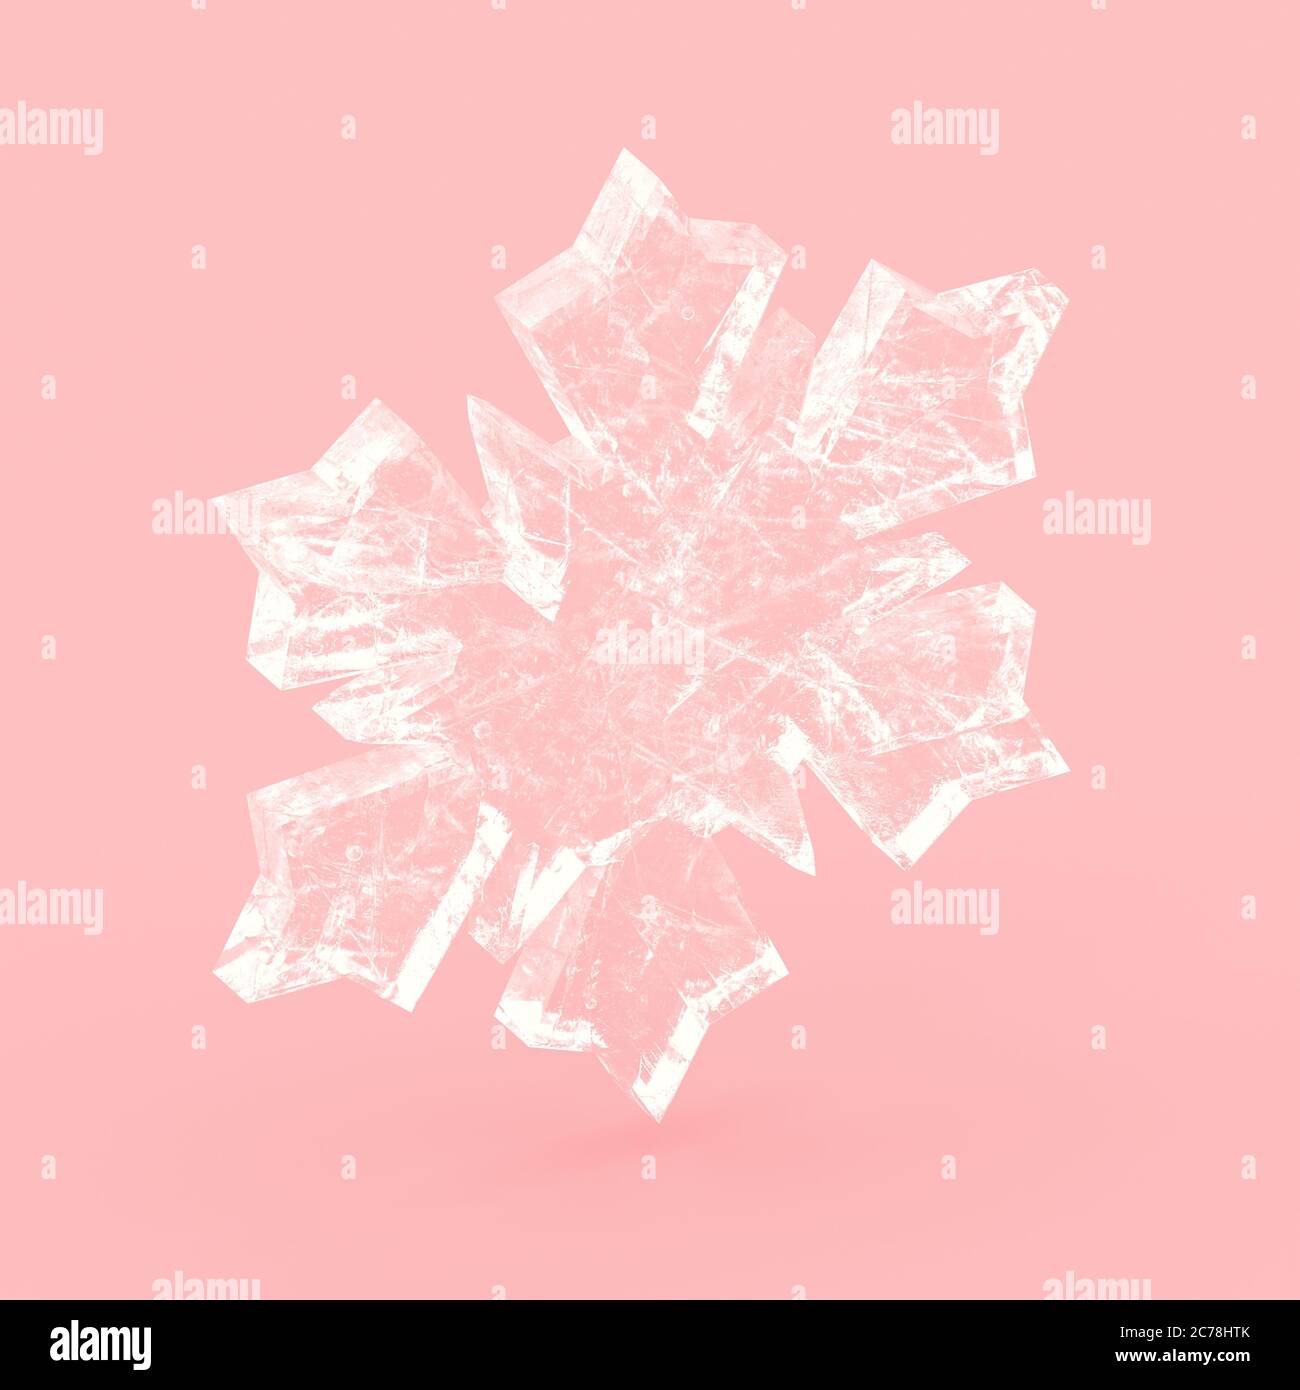 Große Kristall Schneeflocke auf rosa Hintergrund. 3d-Rendering einer Schneeflocke. Frohe Weihnachten Grußkarte. Konzept für ein frohes neues Jahr. Stockfoto